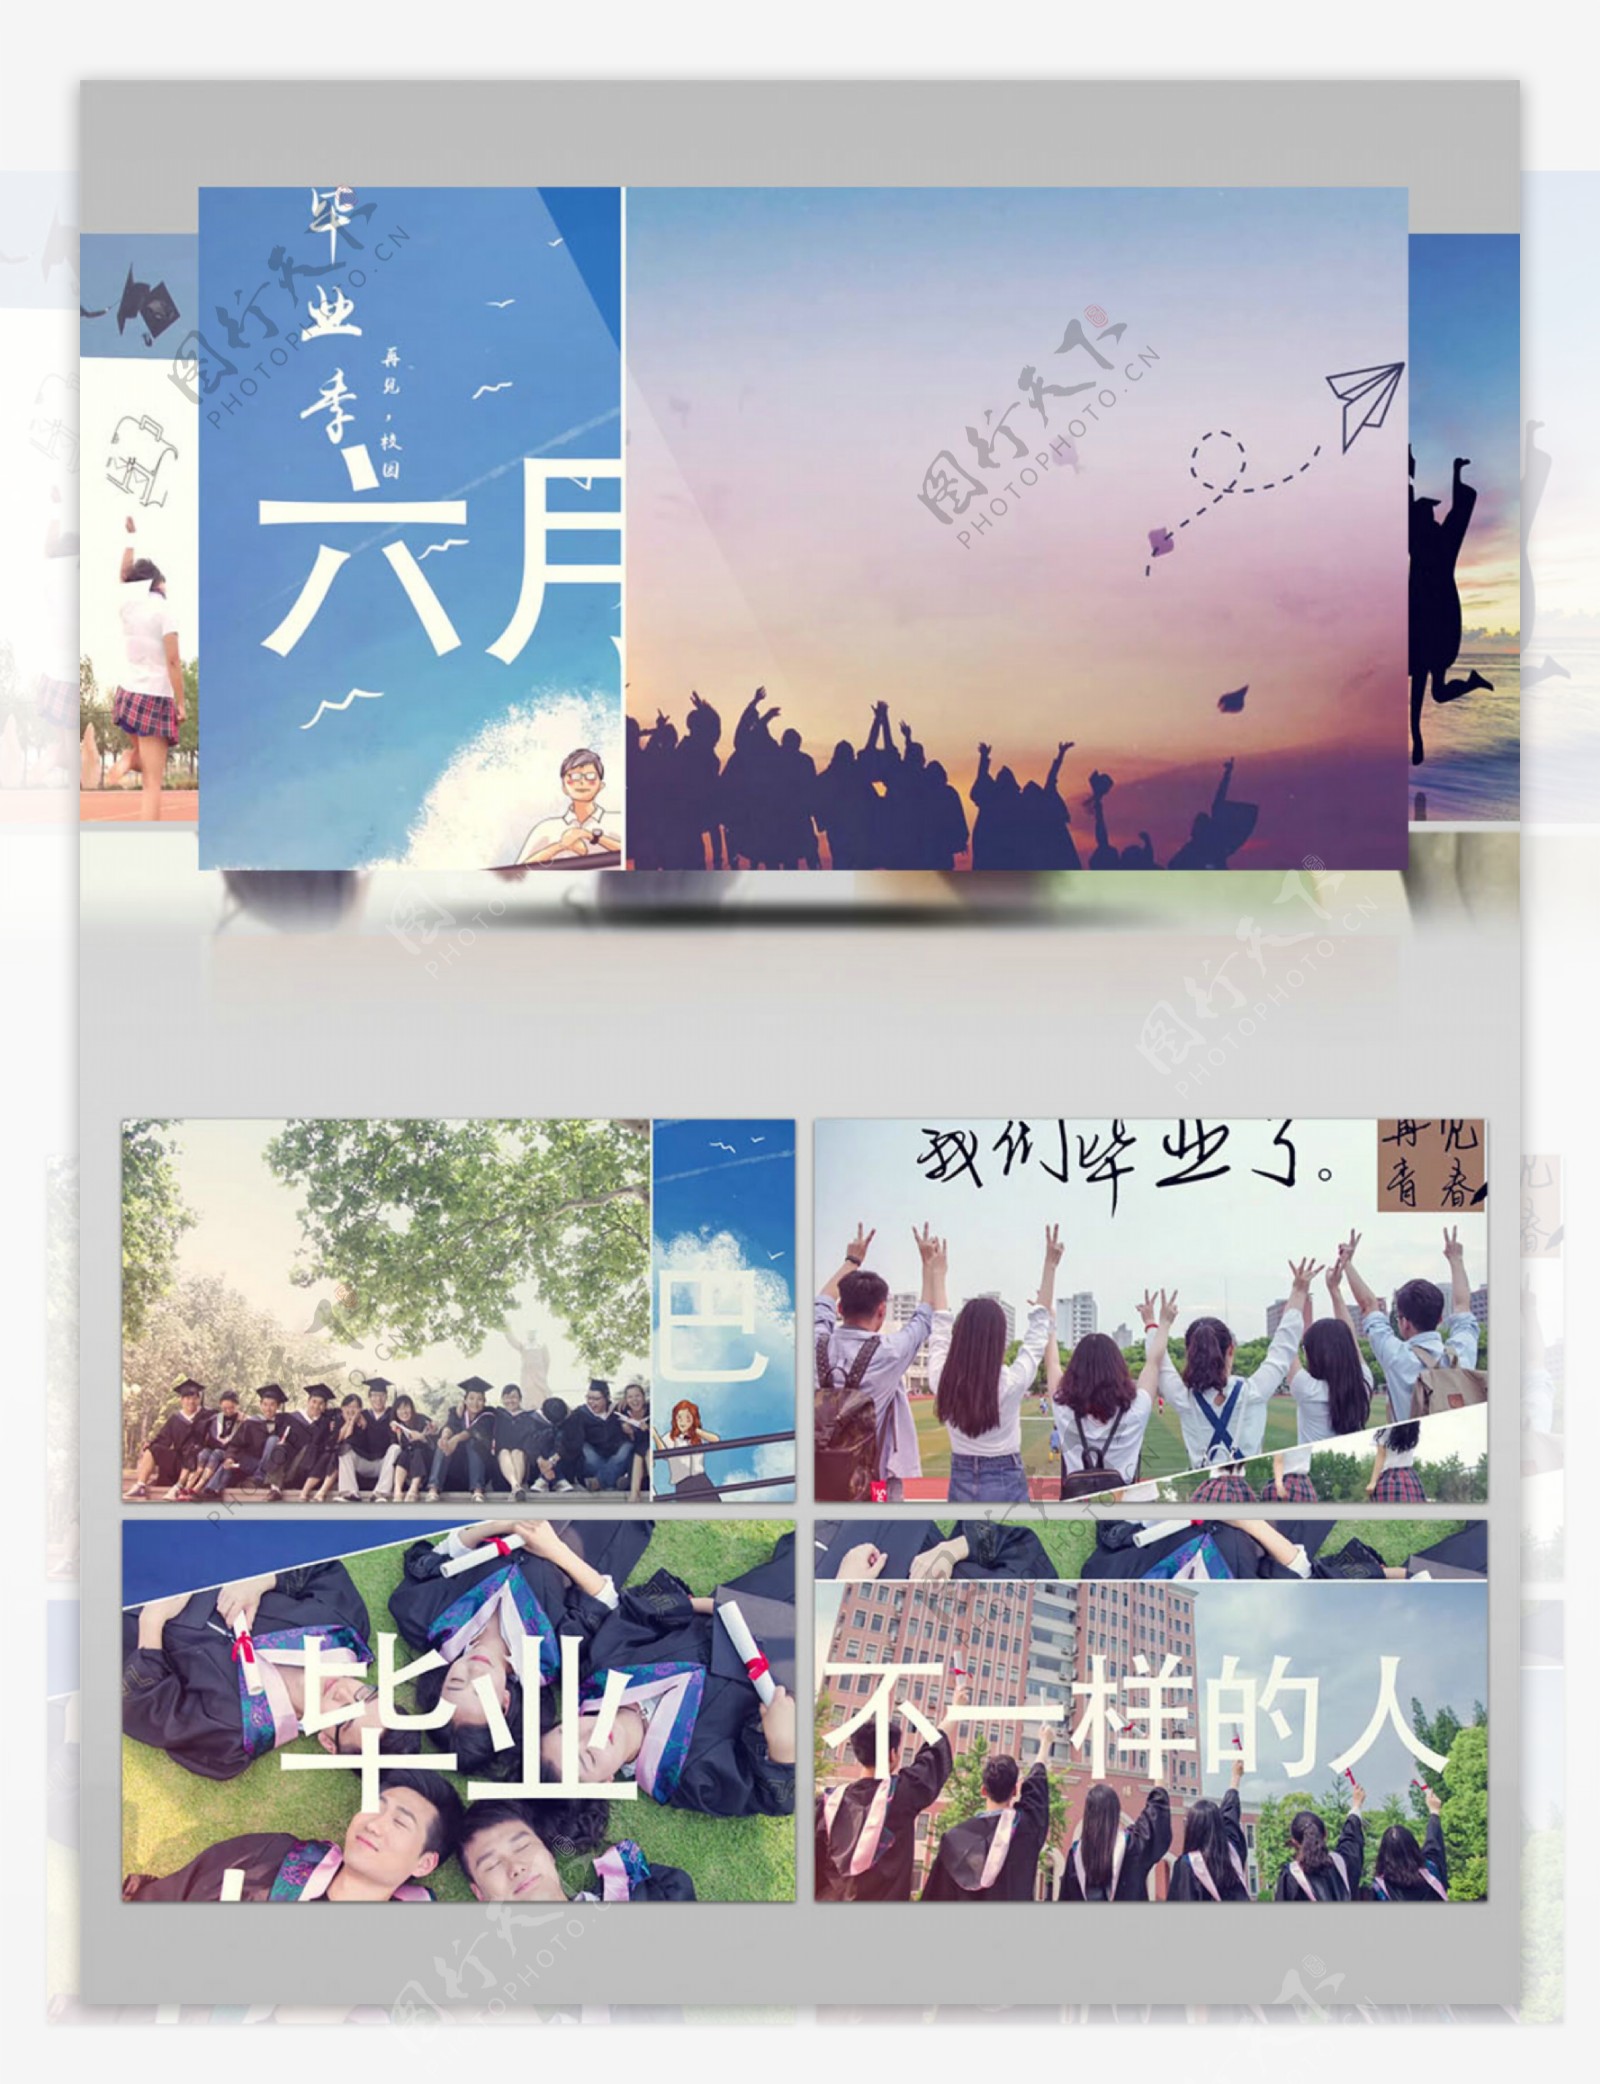 小清新毕业季相册幻灯片展示AE模板